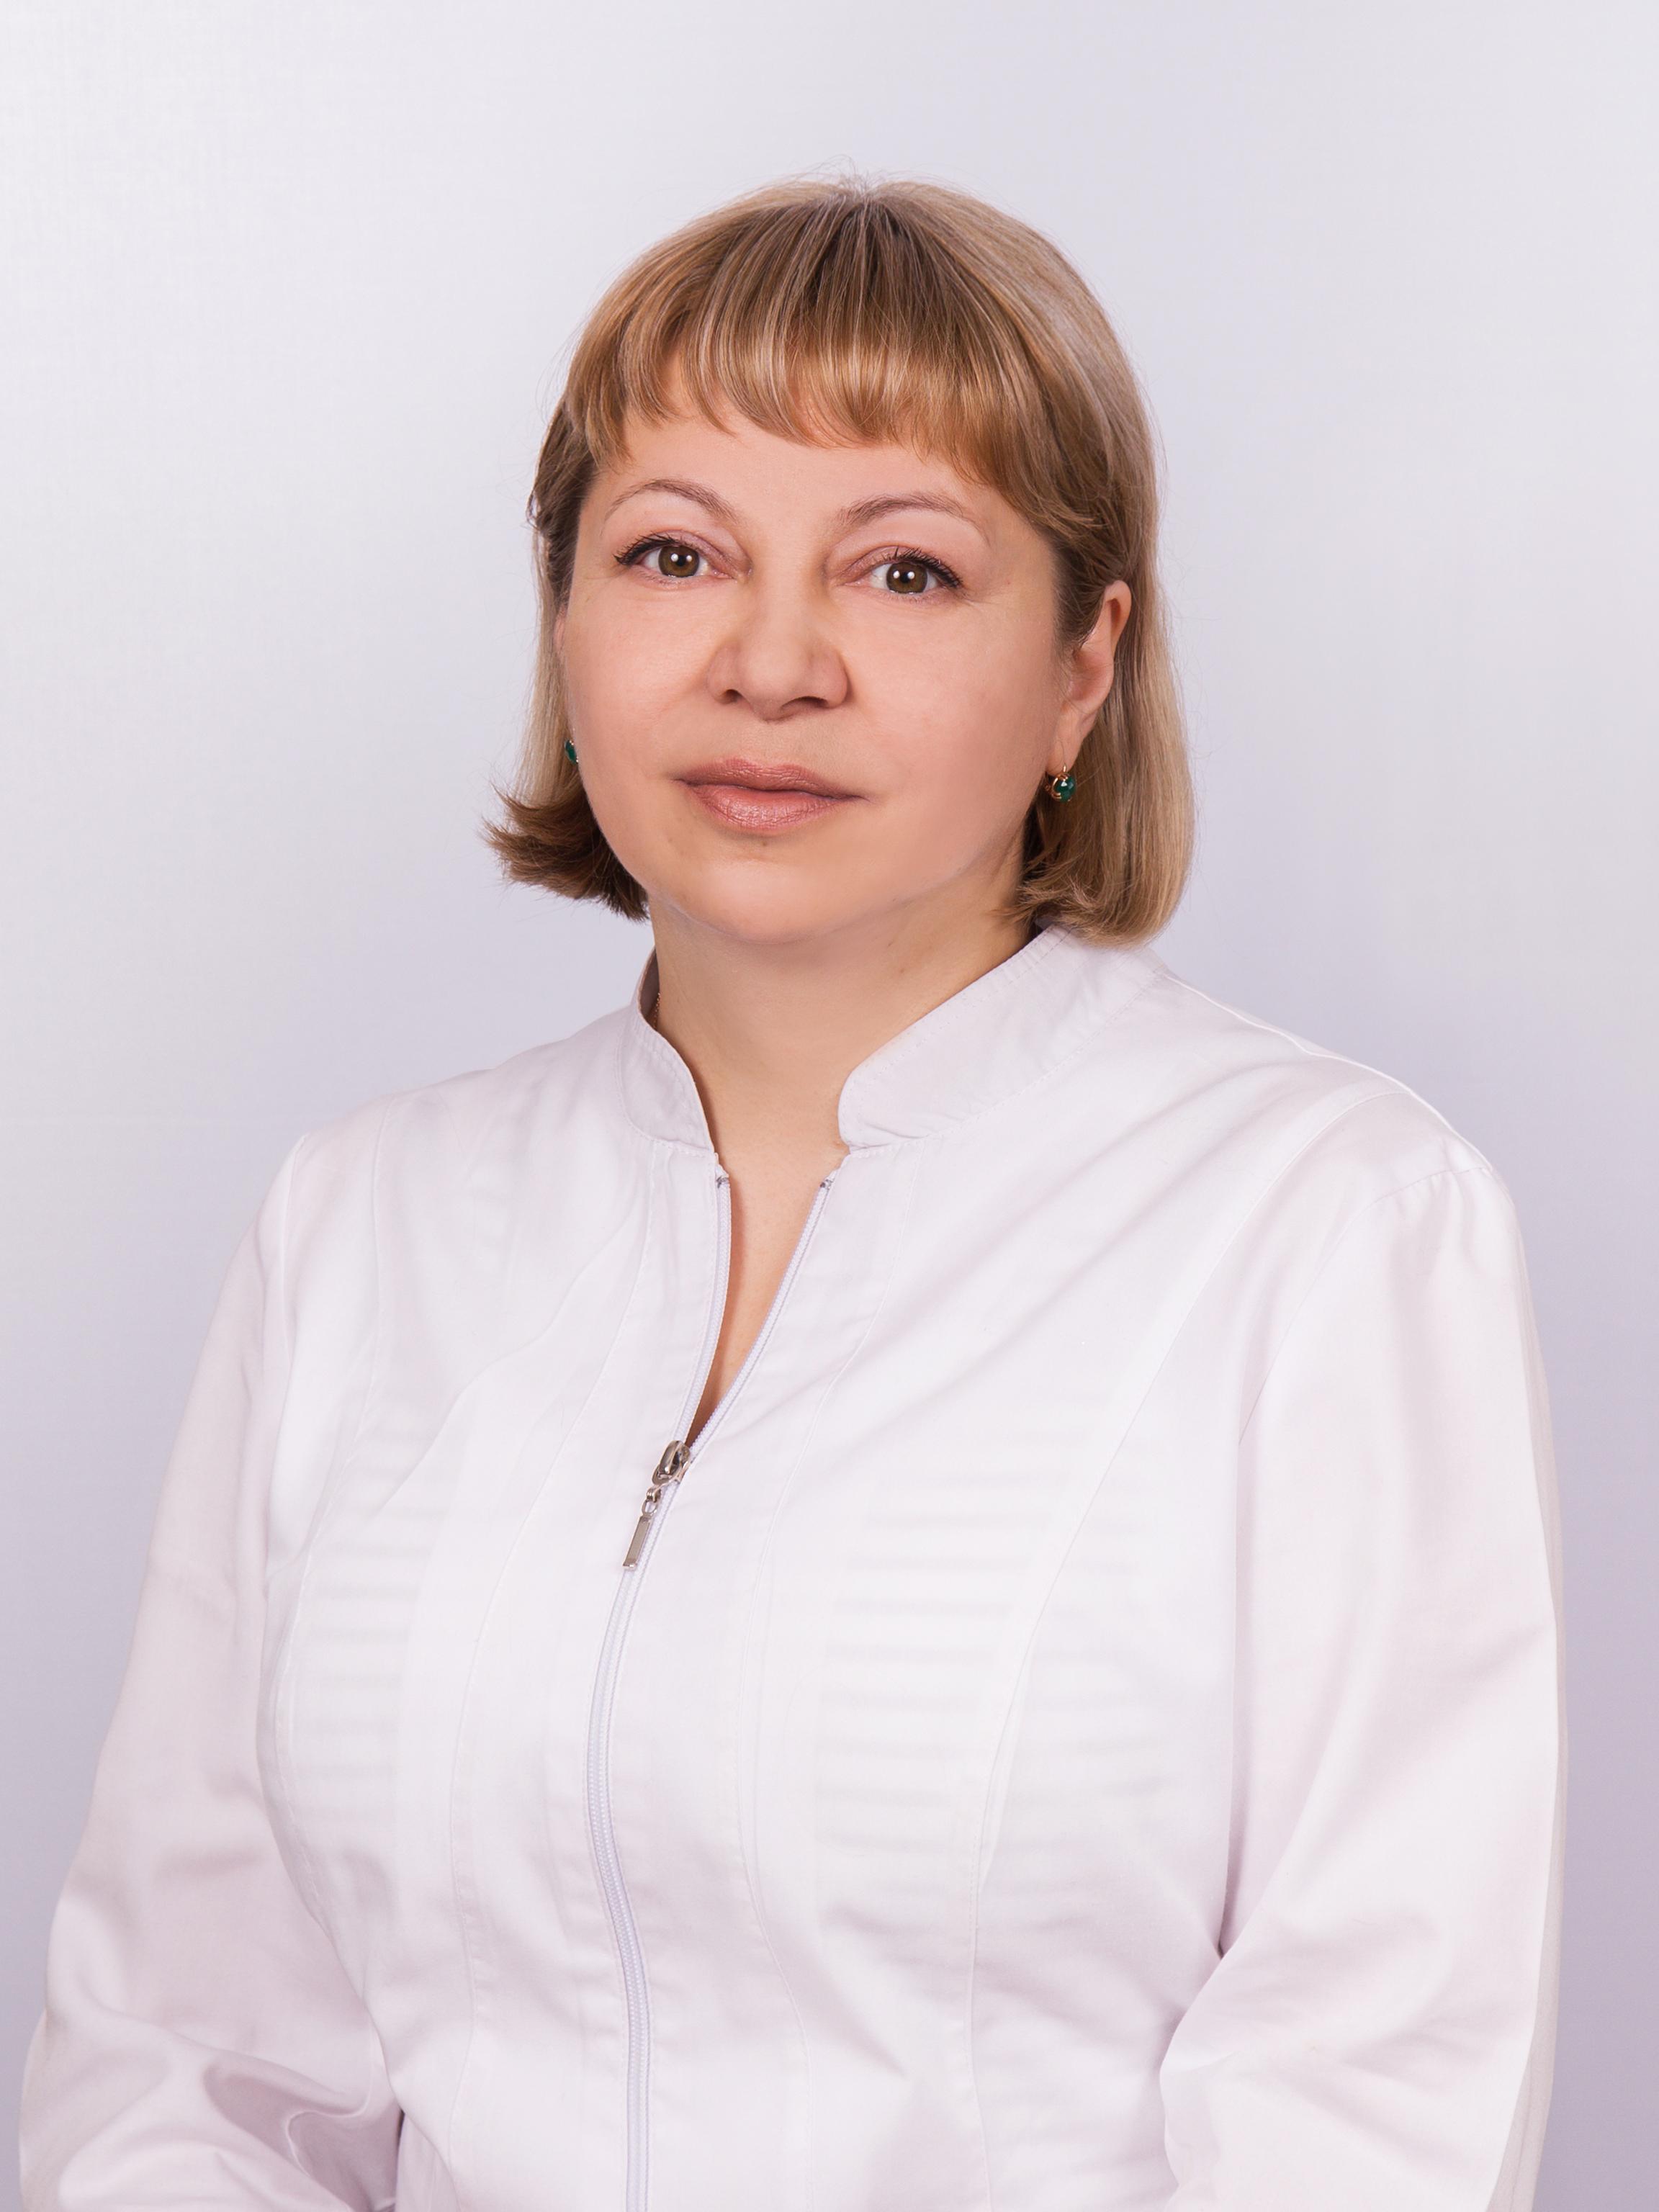 gavrilova nv 2019